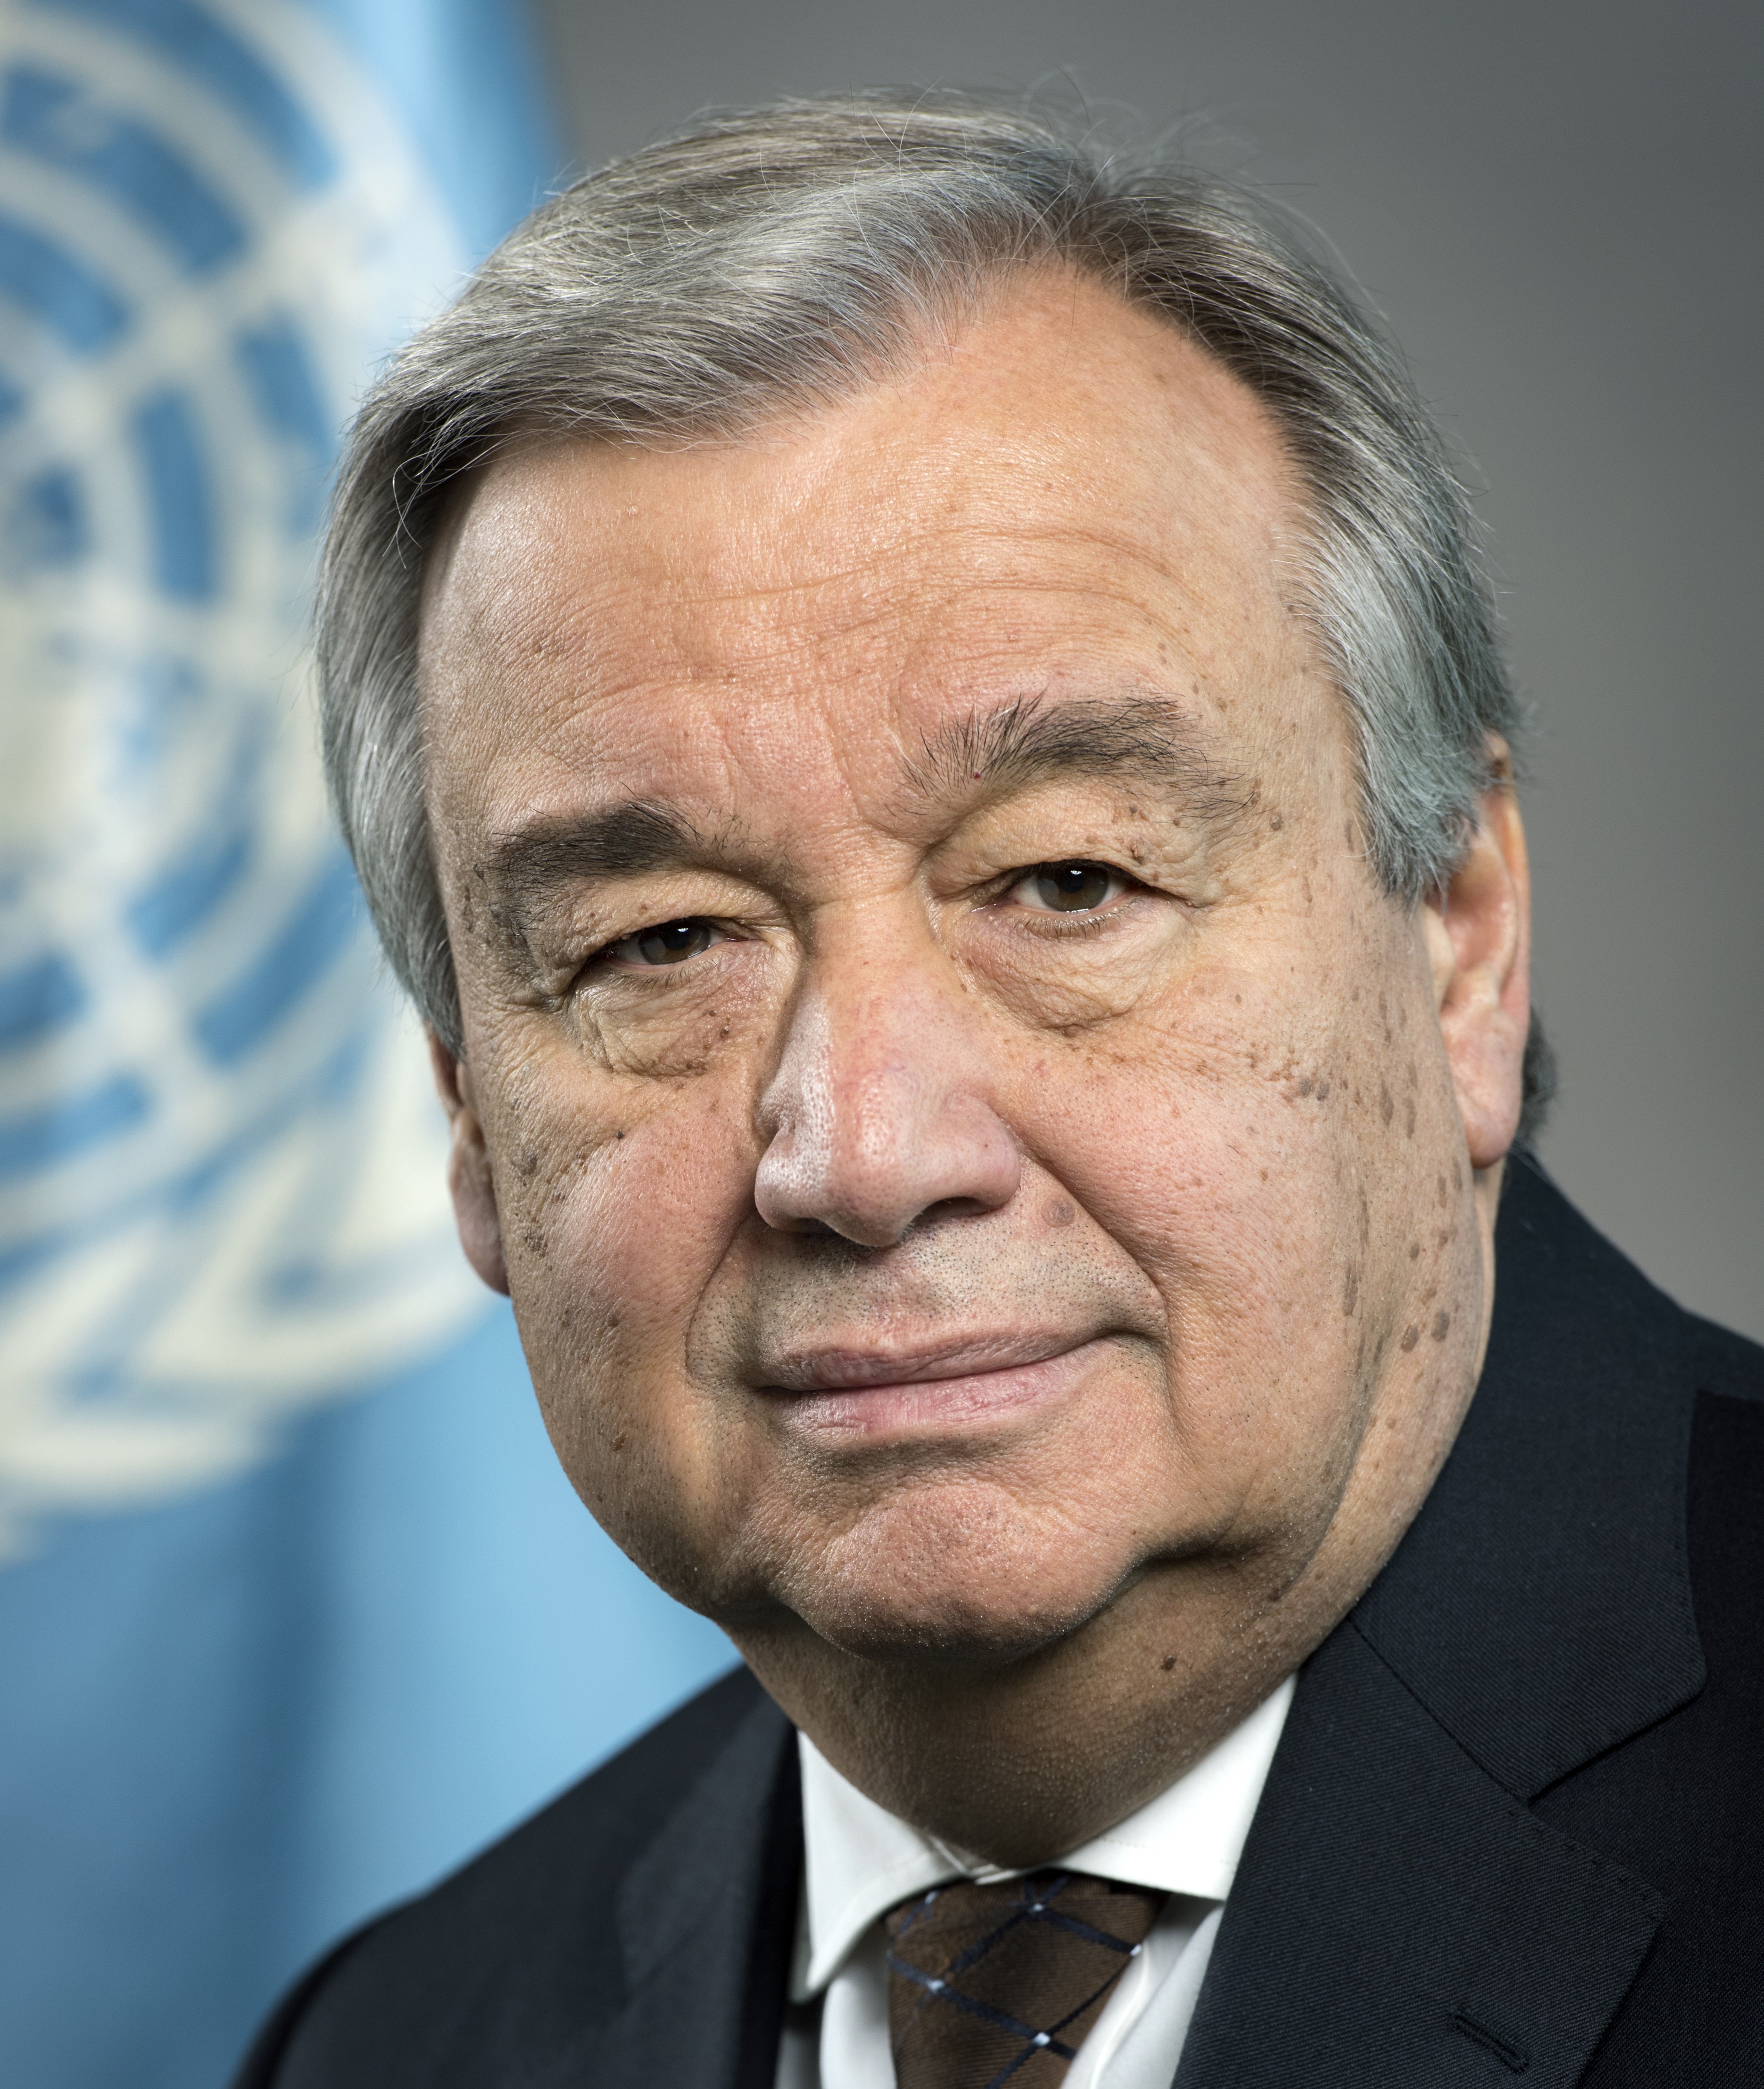 UNSG António Guterres